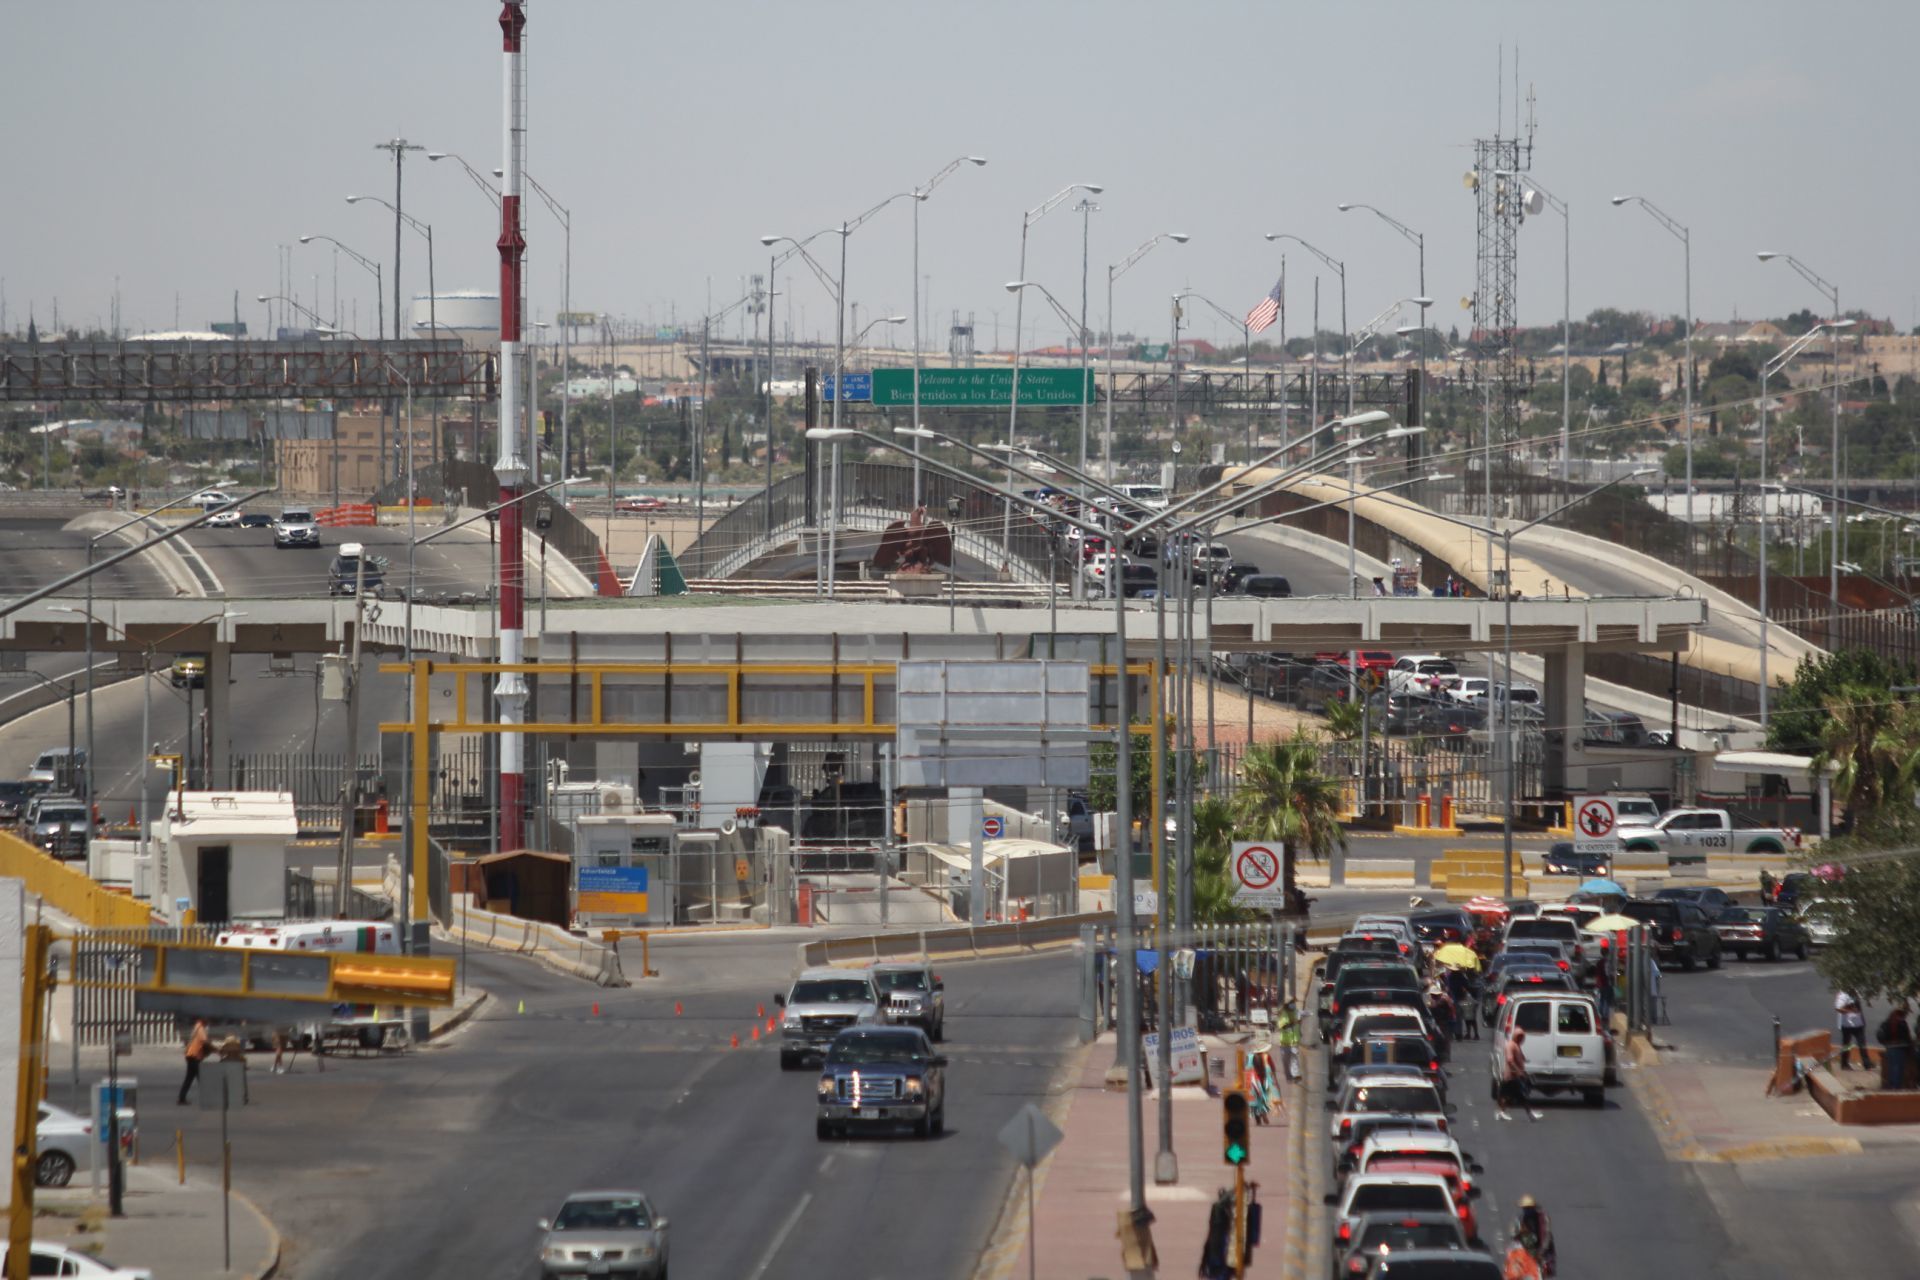 Apertura de frontera con EE.UU. provocaría reducción del 10% en ventas en comercios, estima CANACO de Ciudad Juárez